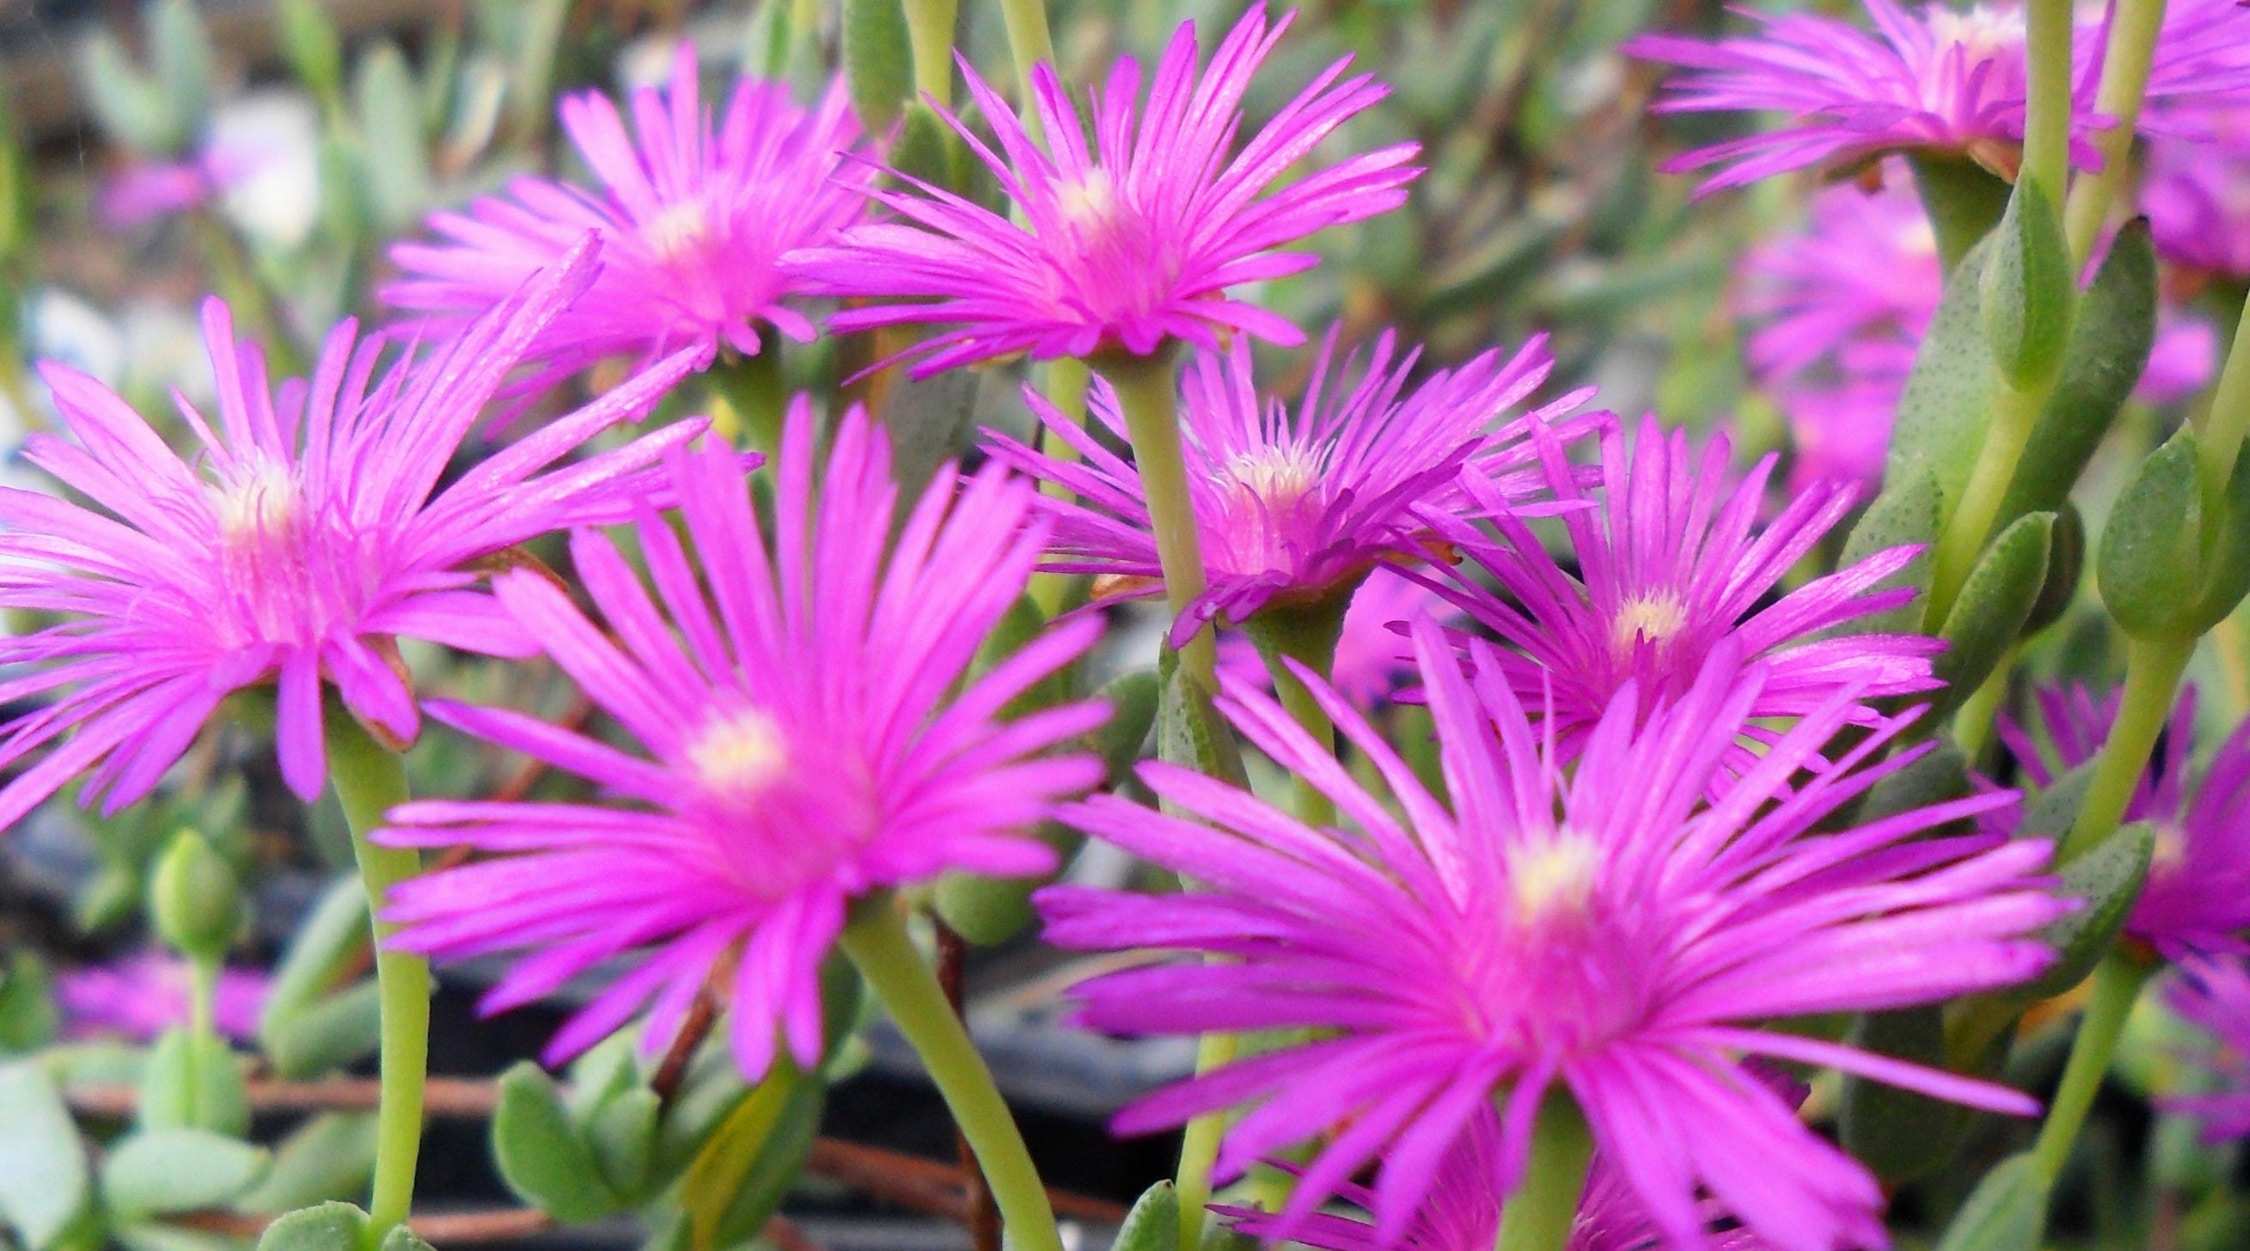 Las plantas de hielo arbustivas tienen flores vibrantes de color rosa púrpura.  Sus tallos están cubiertos de diminutas hojas carnosas de color verde, de forma cilíndrica. forma.